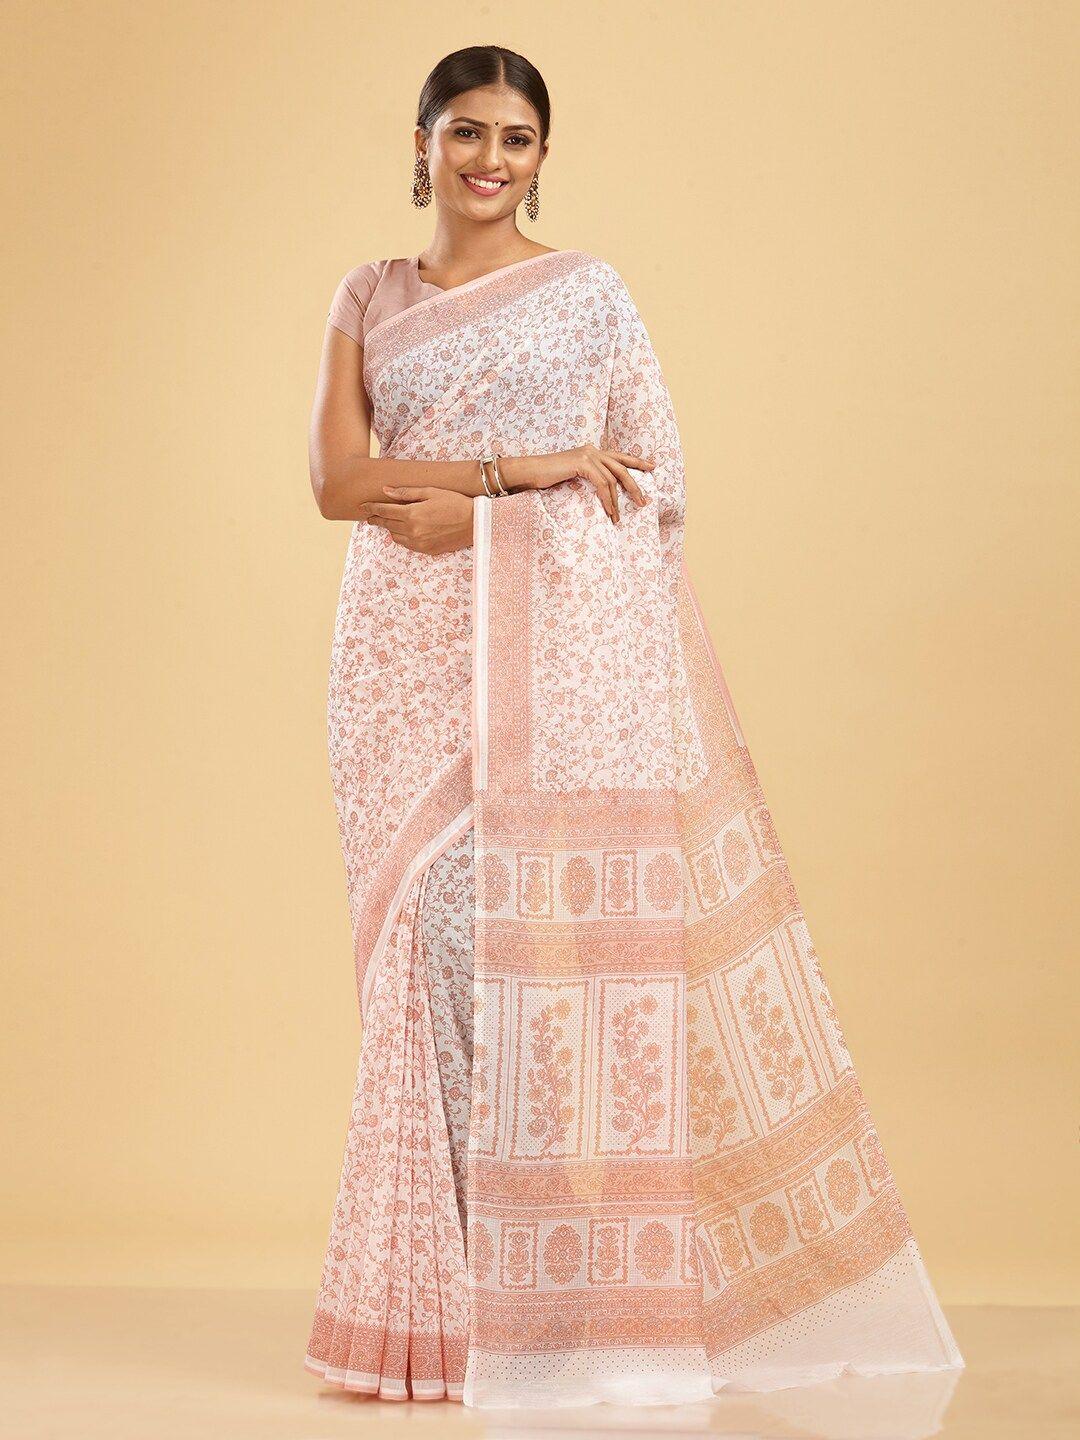 shanvika floral printed saree